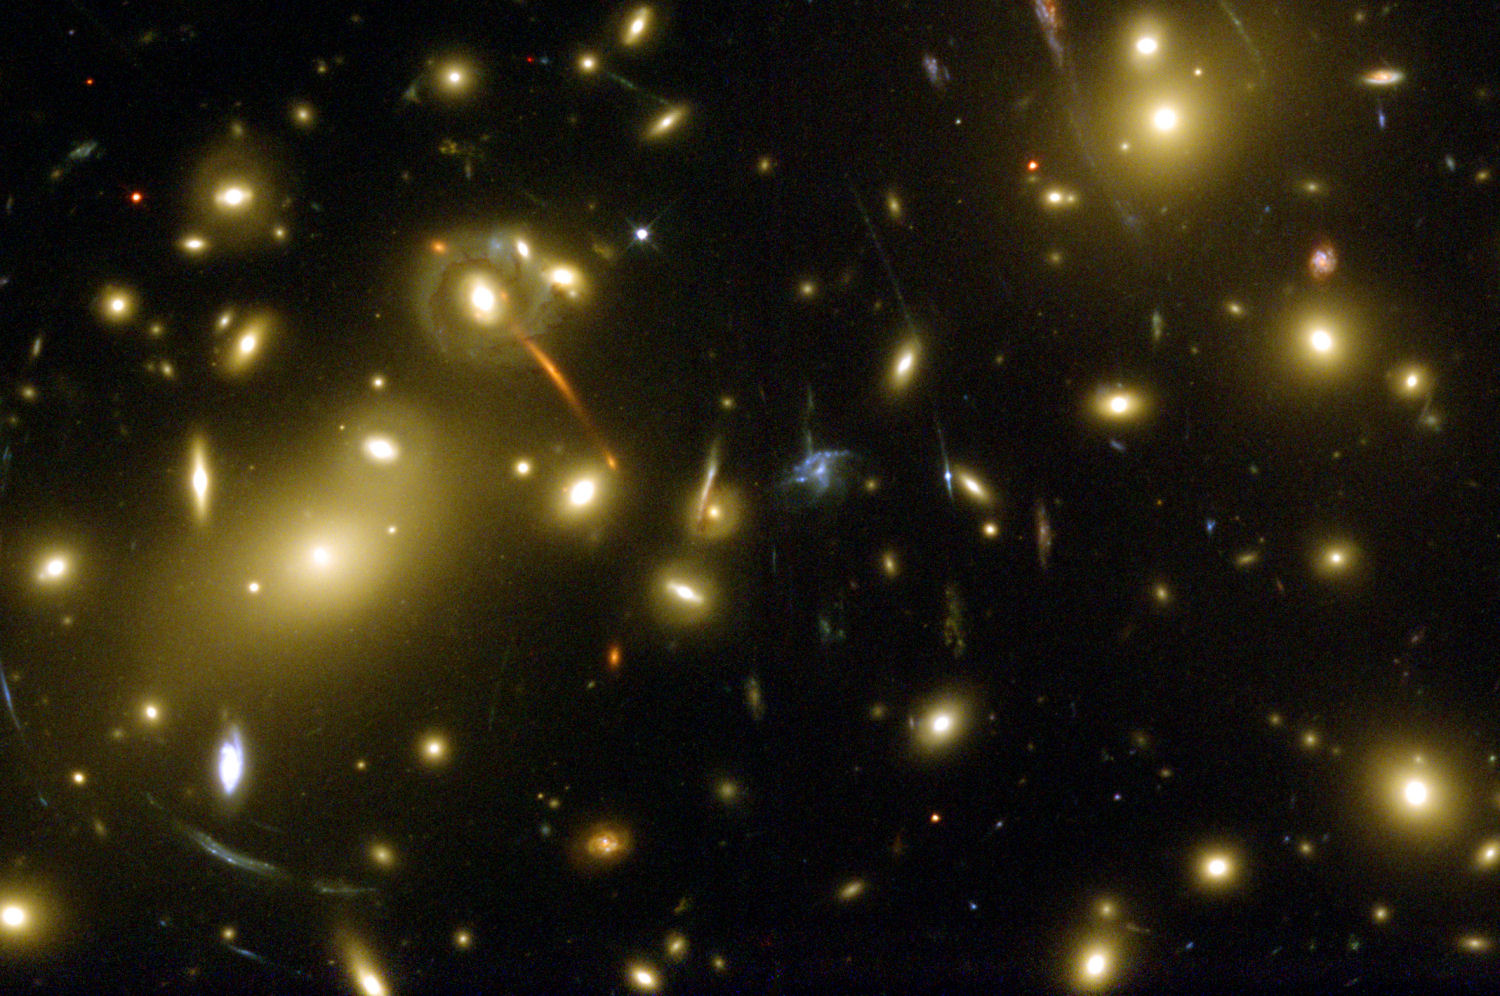 Une image prise avec le télescope Hubble de l'amas de galaxies riche en matière noire Abell 2218. Des effets de lentille gravitationnelle sont bien visibles. Crédit : Andrew Fruchter